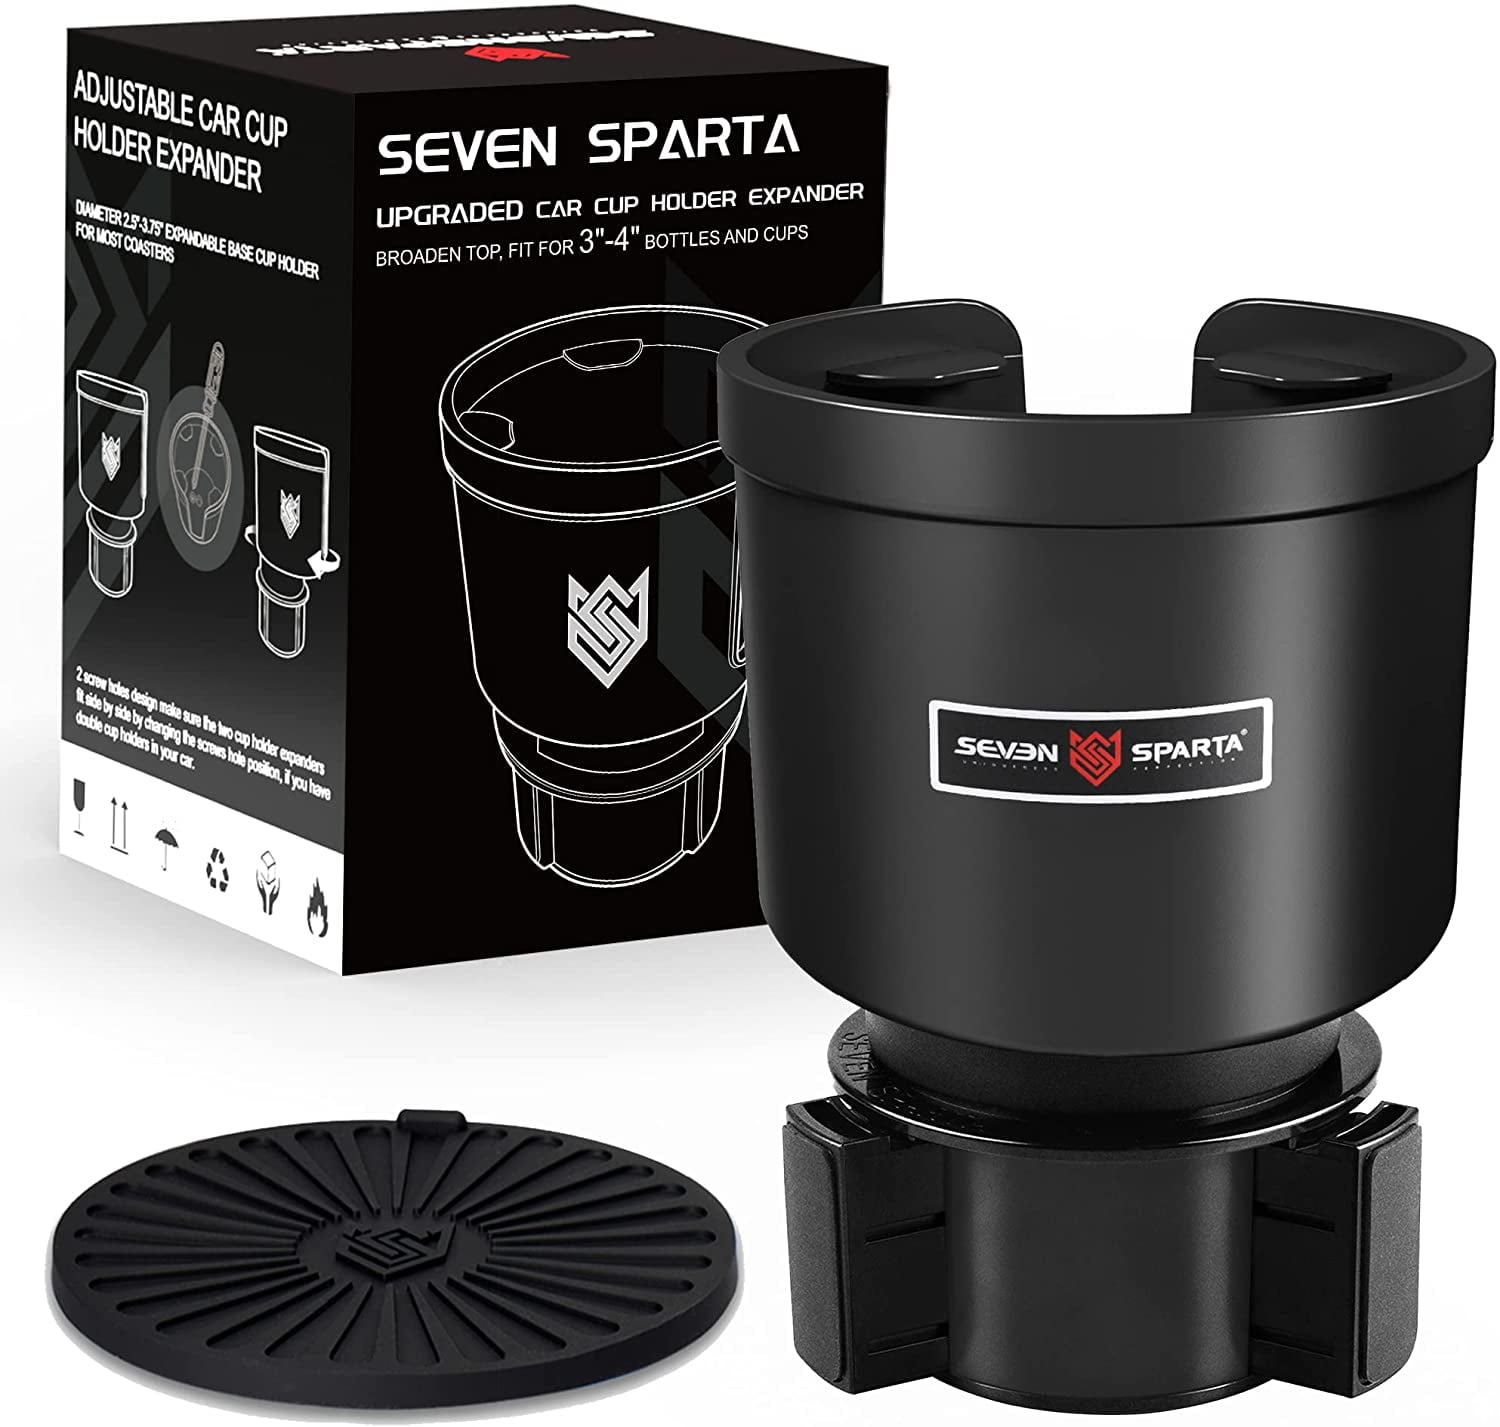 Seven Sparta Adjustable Car Cup Holder Expander - Dutch Goat